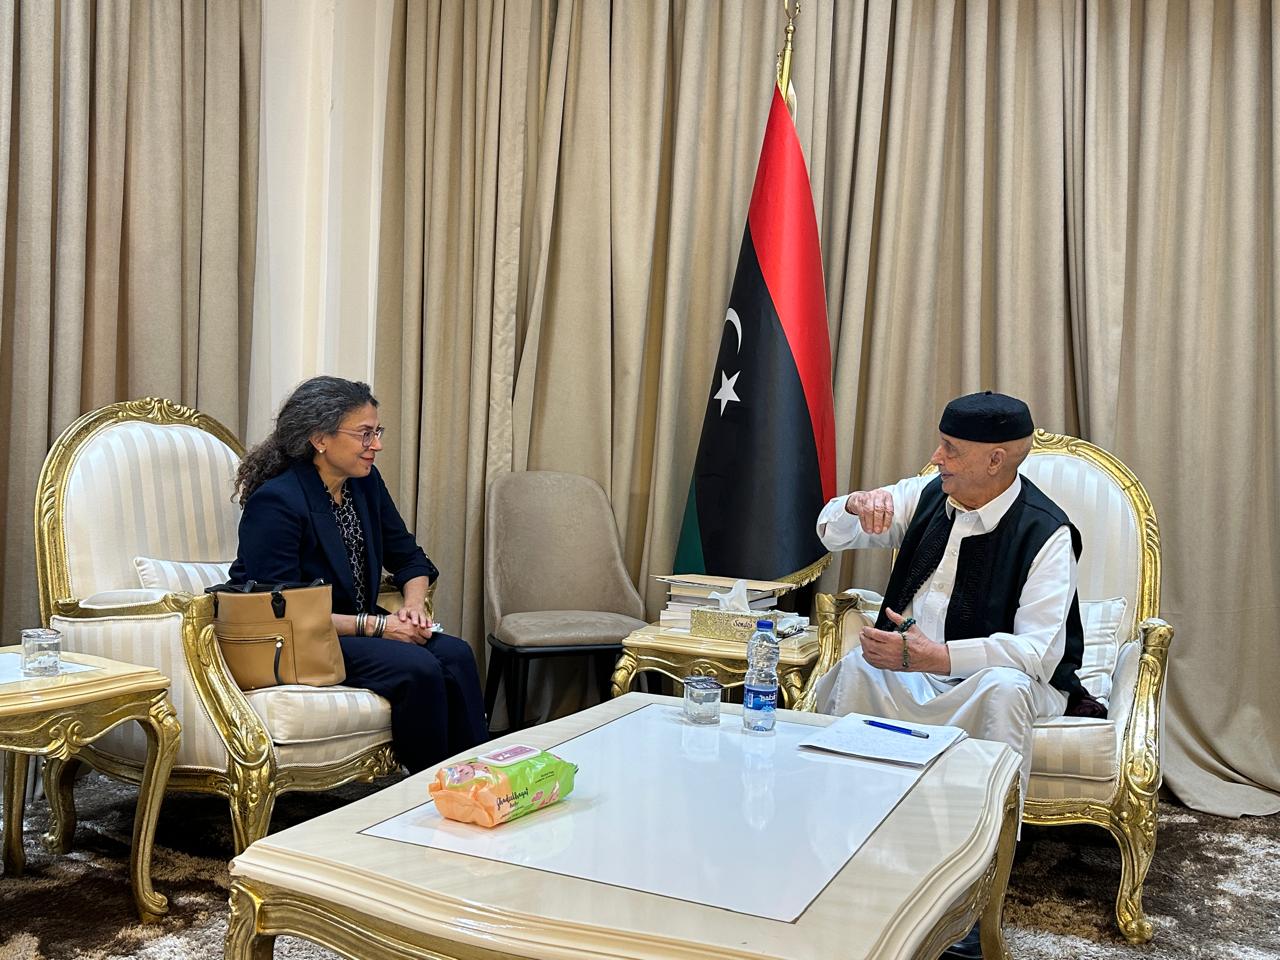 ستيفاني خوري : اجراء الانتخابات سيلبي تطلعات الليبيين في اختيار قيادتهم وتجديد شرعية مؤسساتهم.